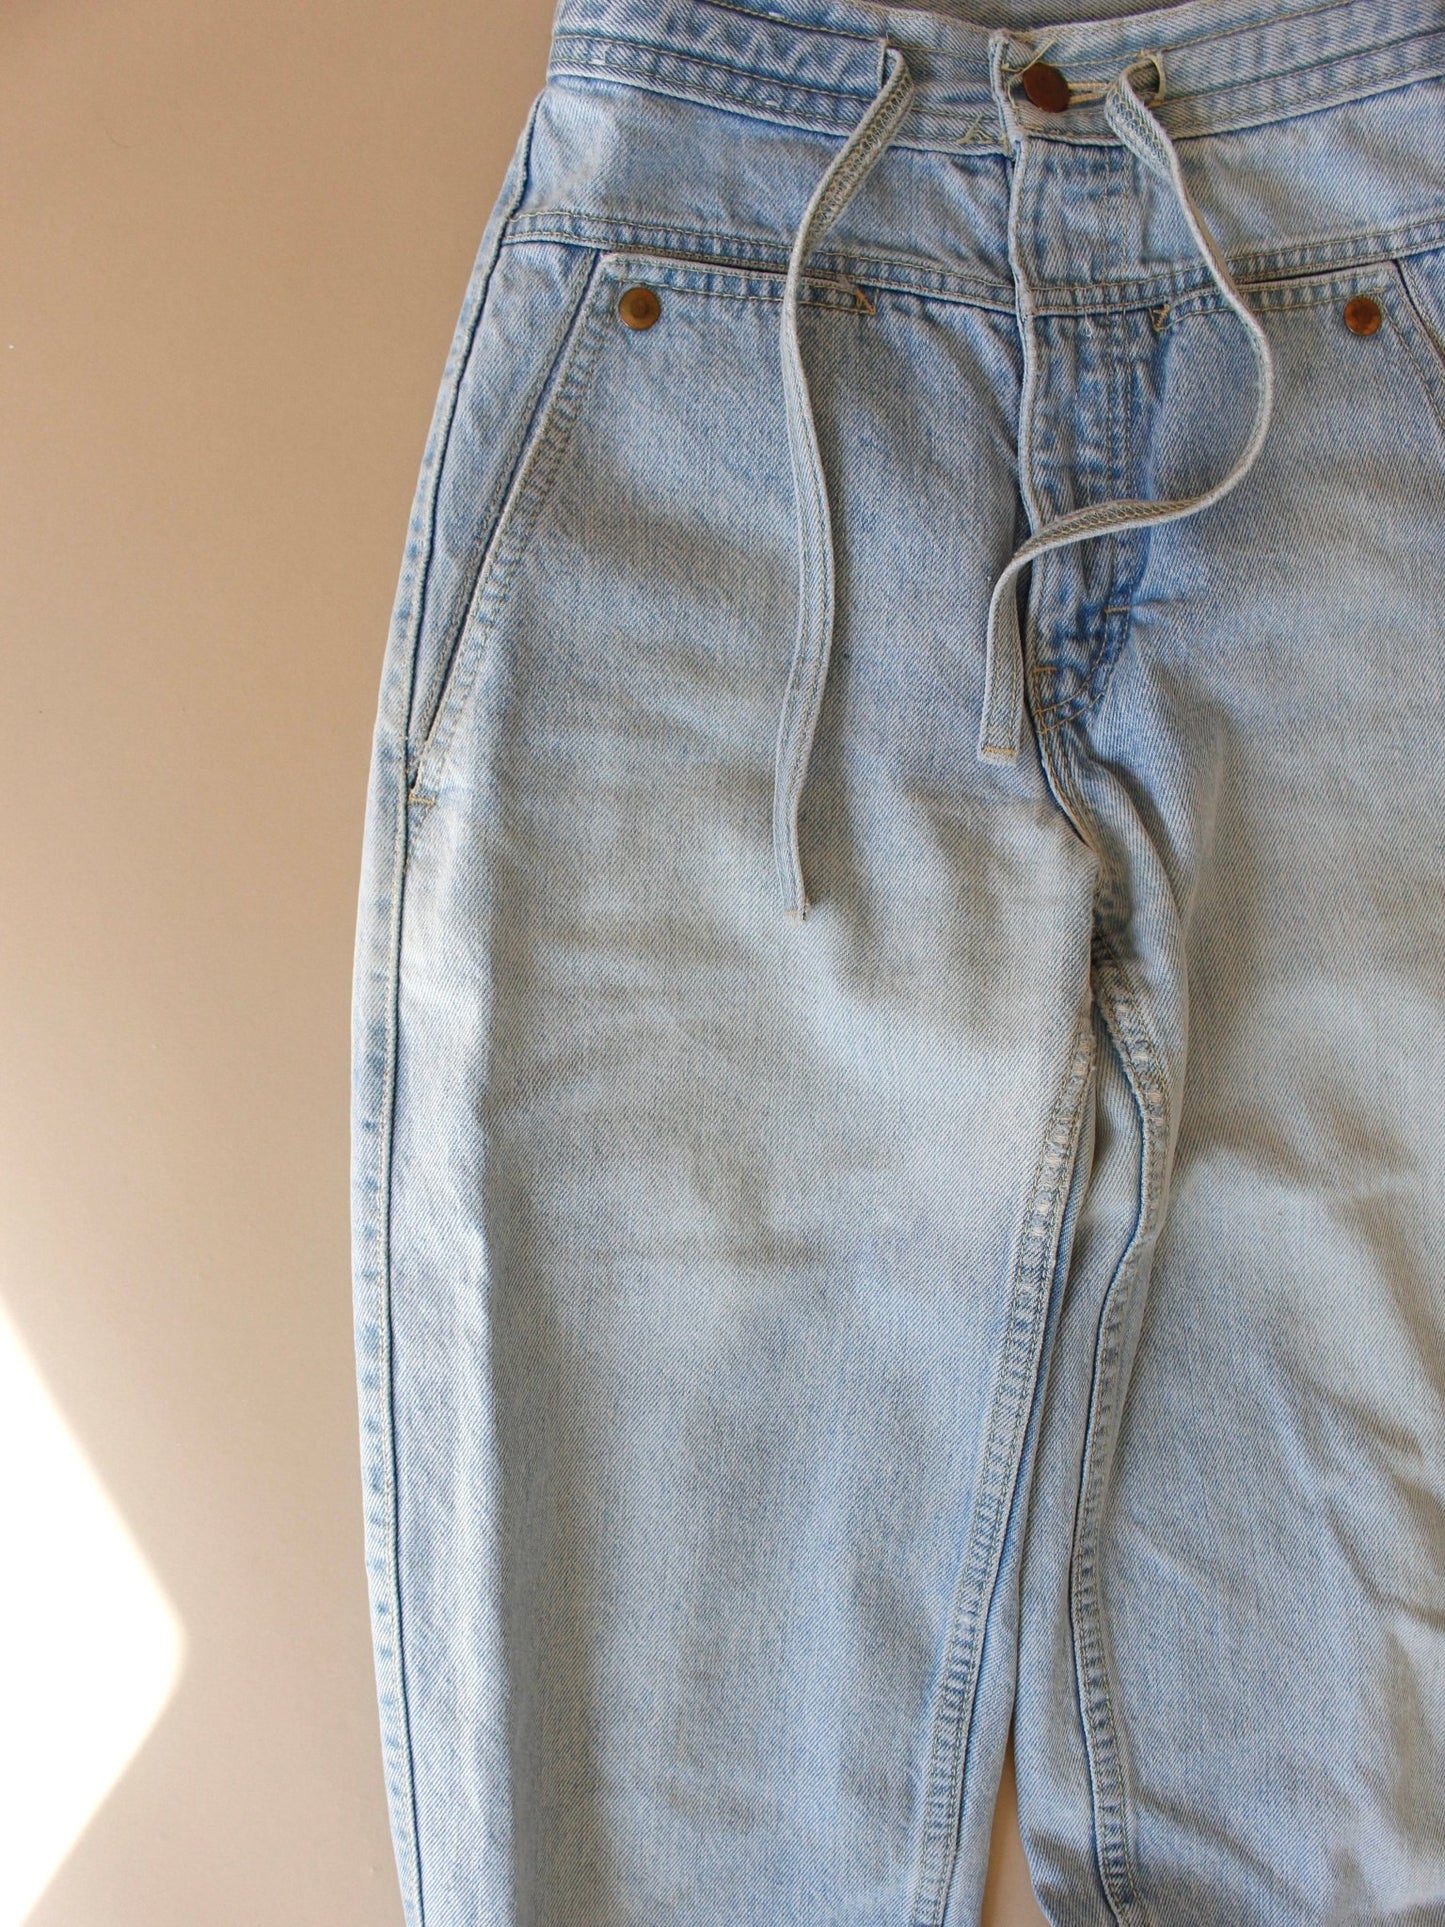 1970s Rit3 Light Wash Jeans